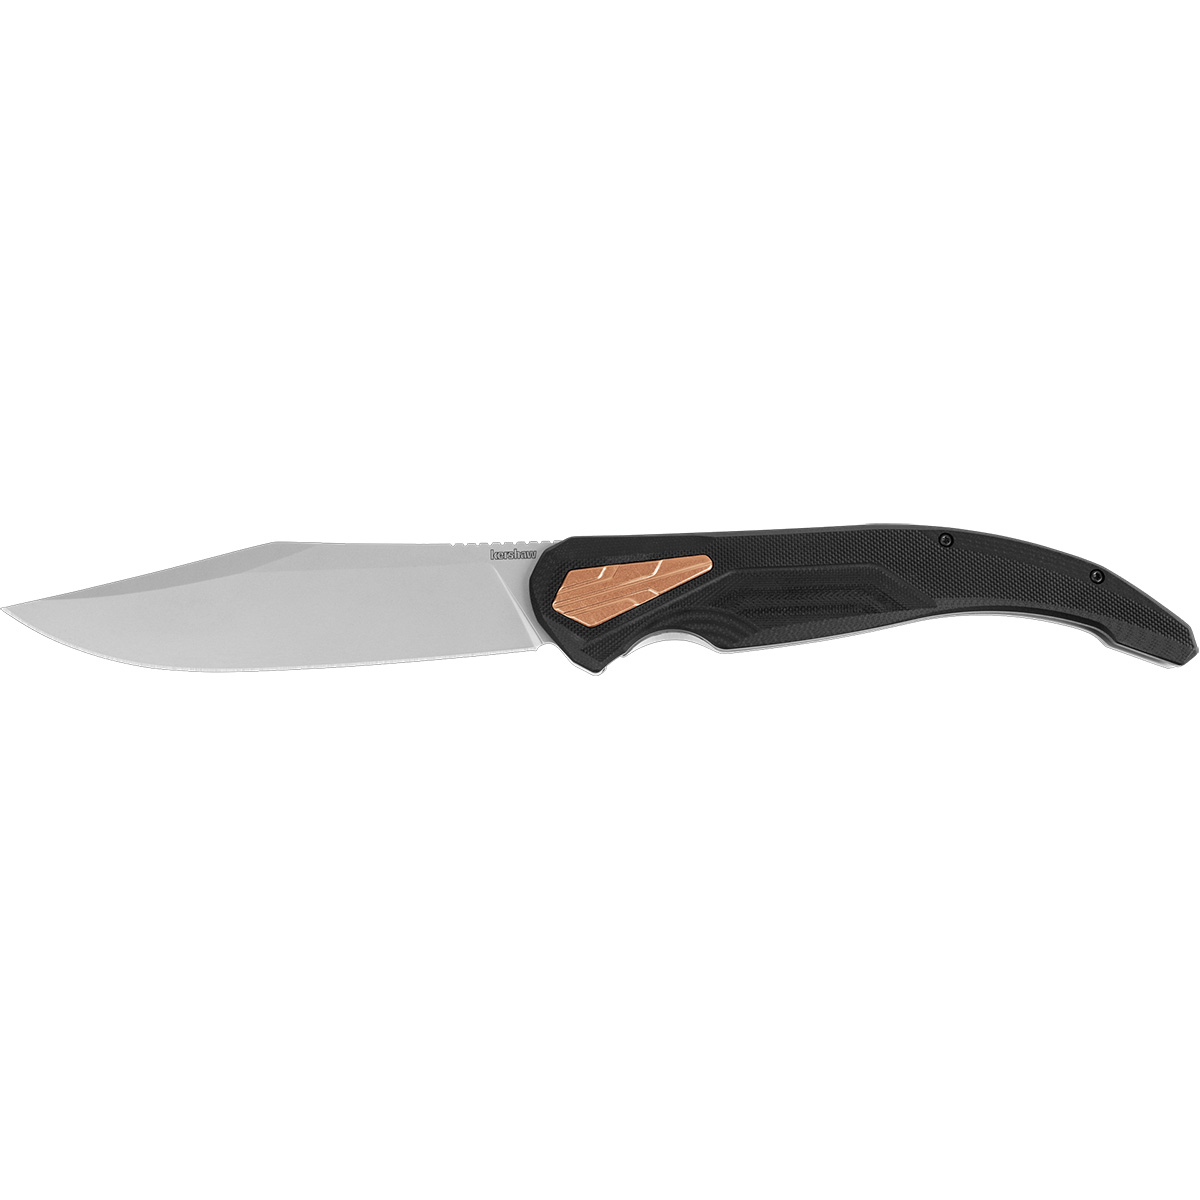 Складной нож Kershaw Strata XL 2077, сталь D2 линейка 500мм нержавеющая сталь двухсторонняя шкала biber 40164 тов 172038